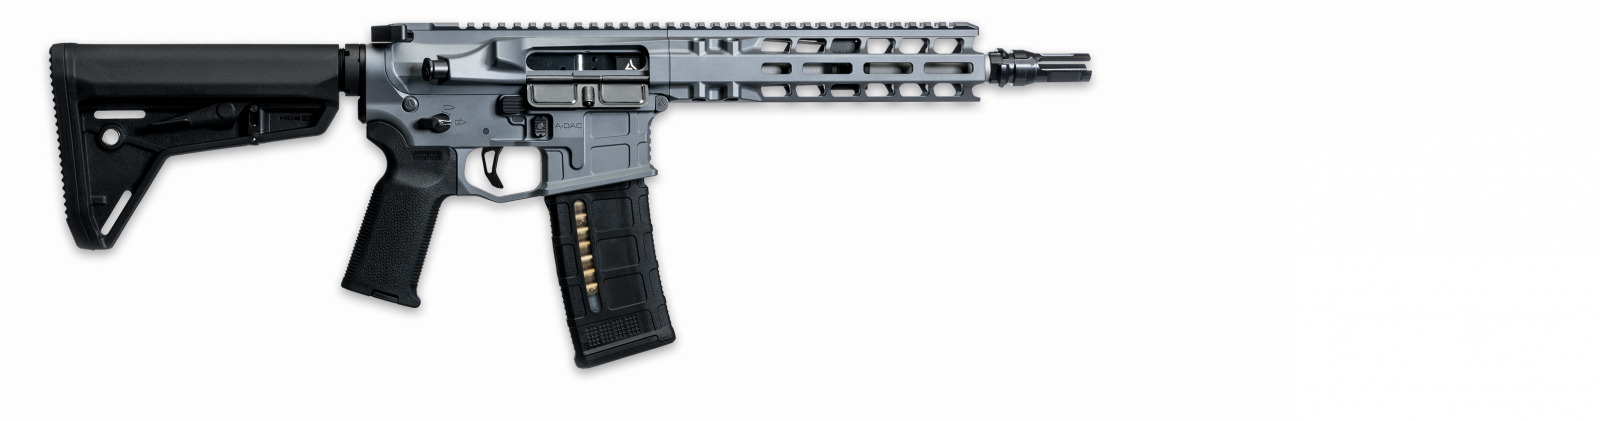 Radian pistole samonabíjecí Model 1 - 9, .300 AAC Blackout, šedá